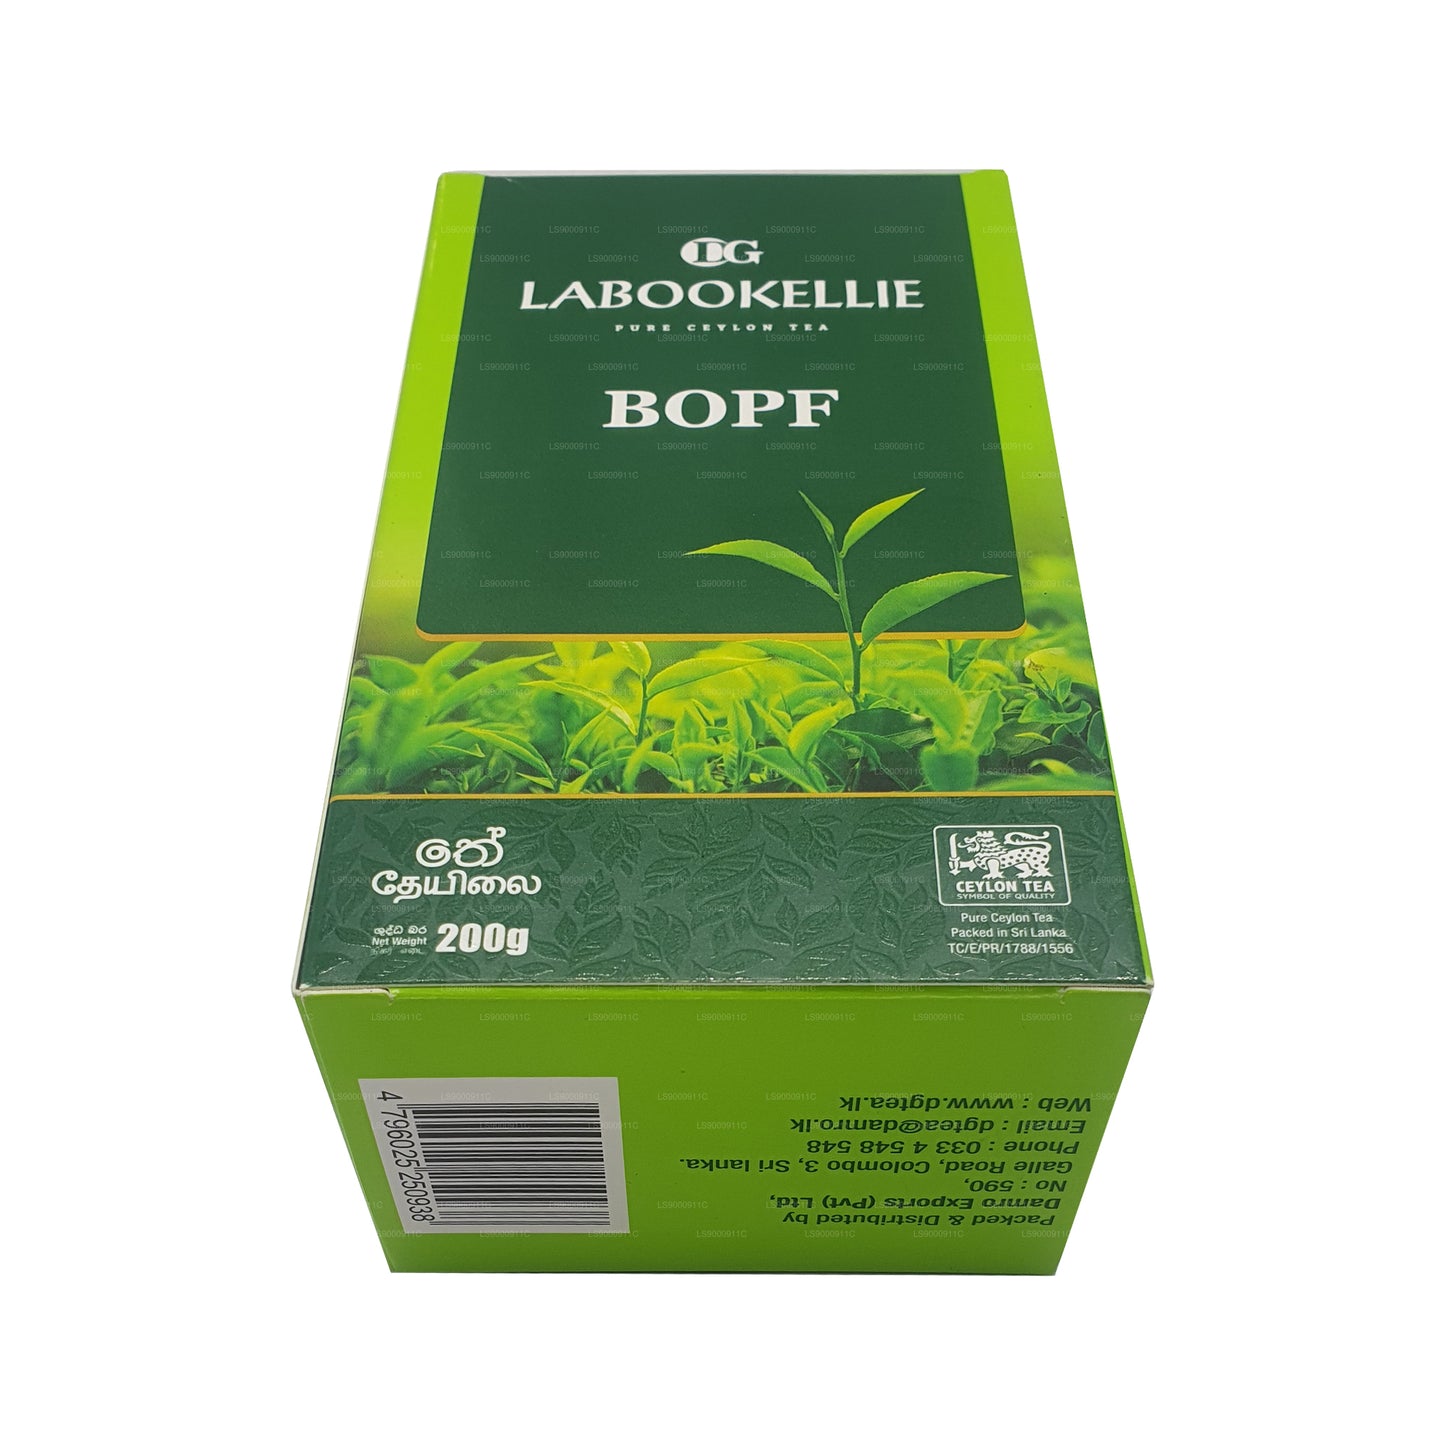 شاي دي جي لابوكيلي بوب (200 جرام)